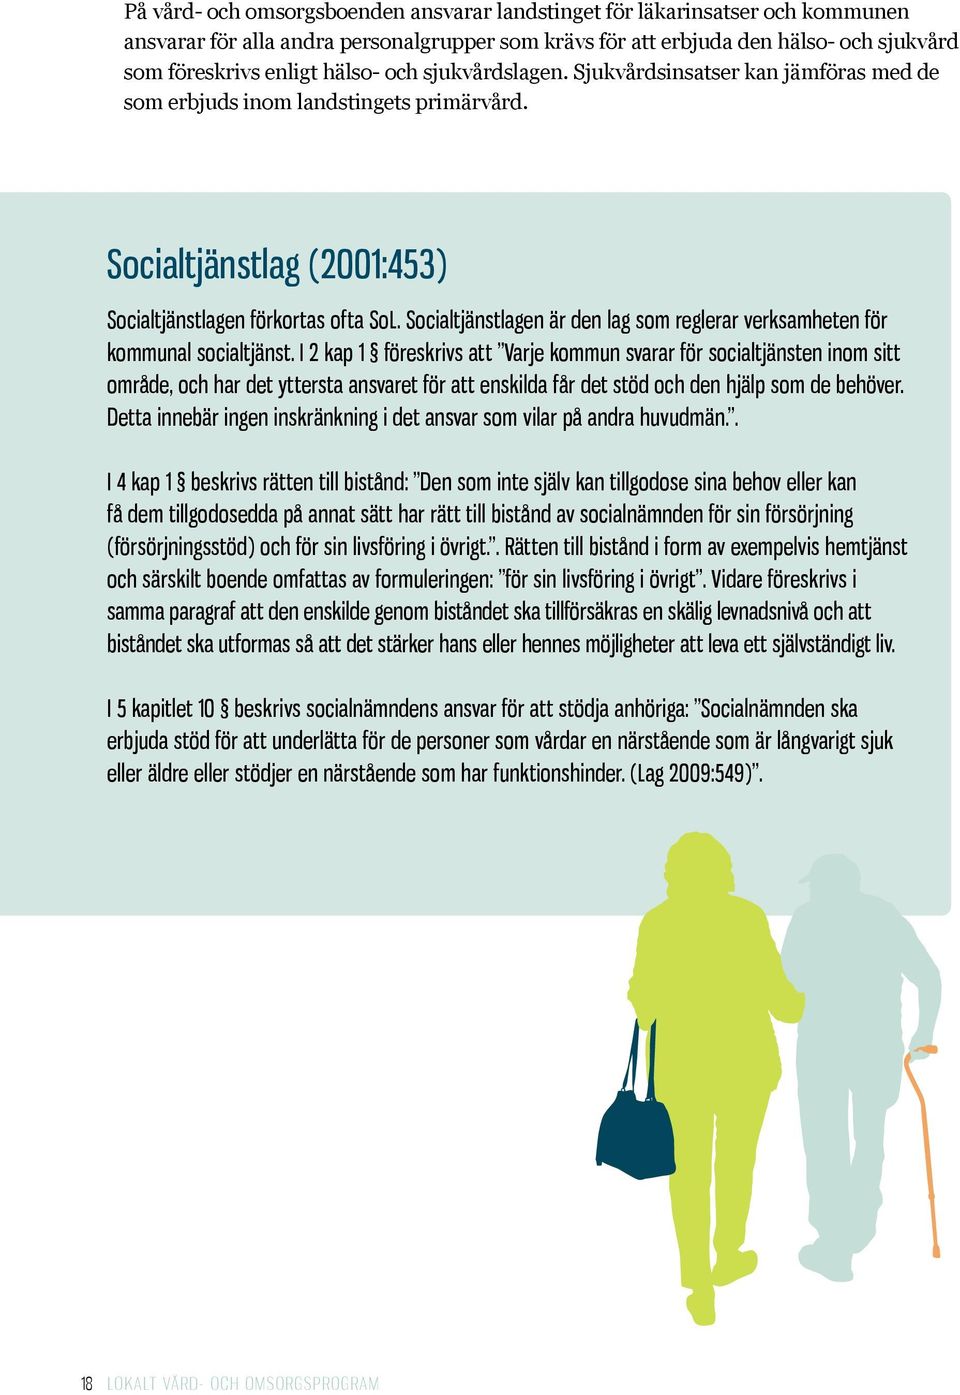 Socialtjänstlagen är den lag som reglerar verksamheten för kommunal socialtjänst.